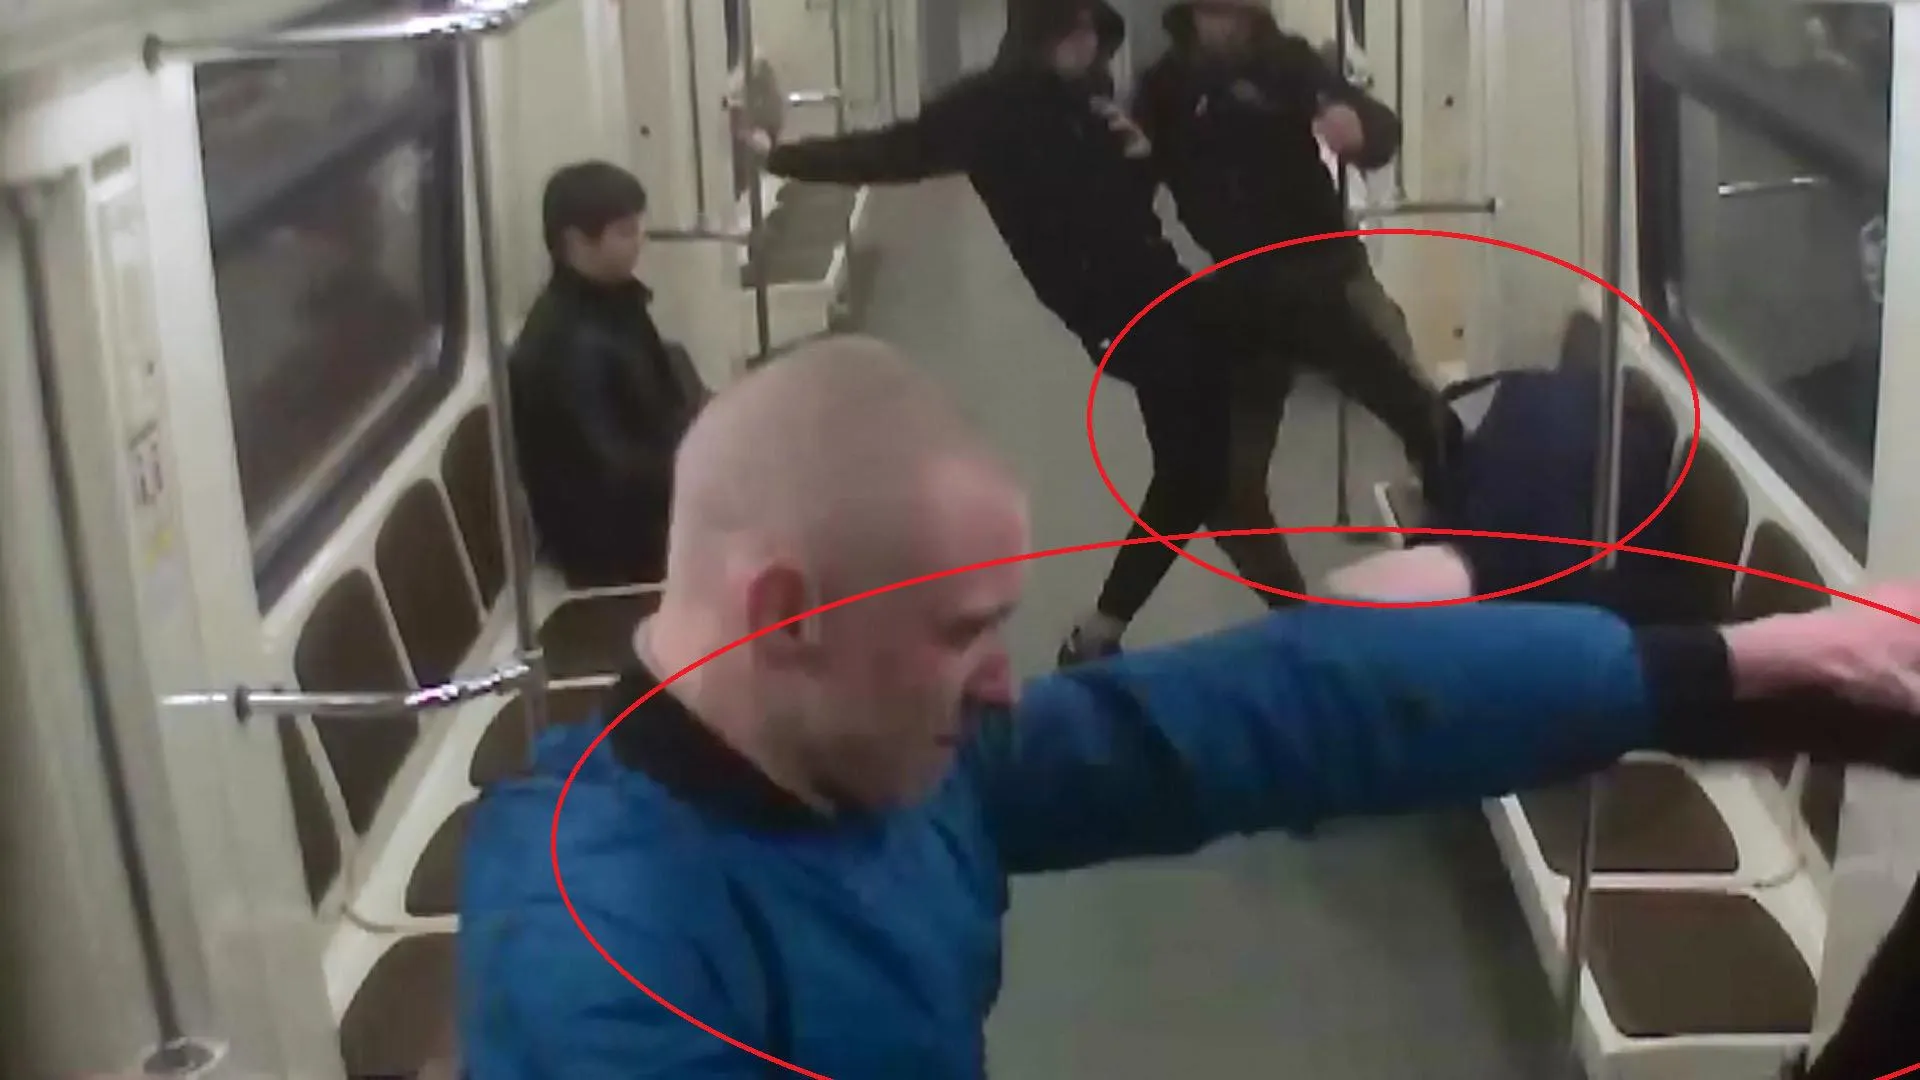 СК предъявил обвинение фанатам, которые устроили драку в вагоне метро